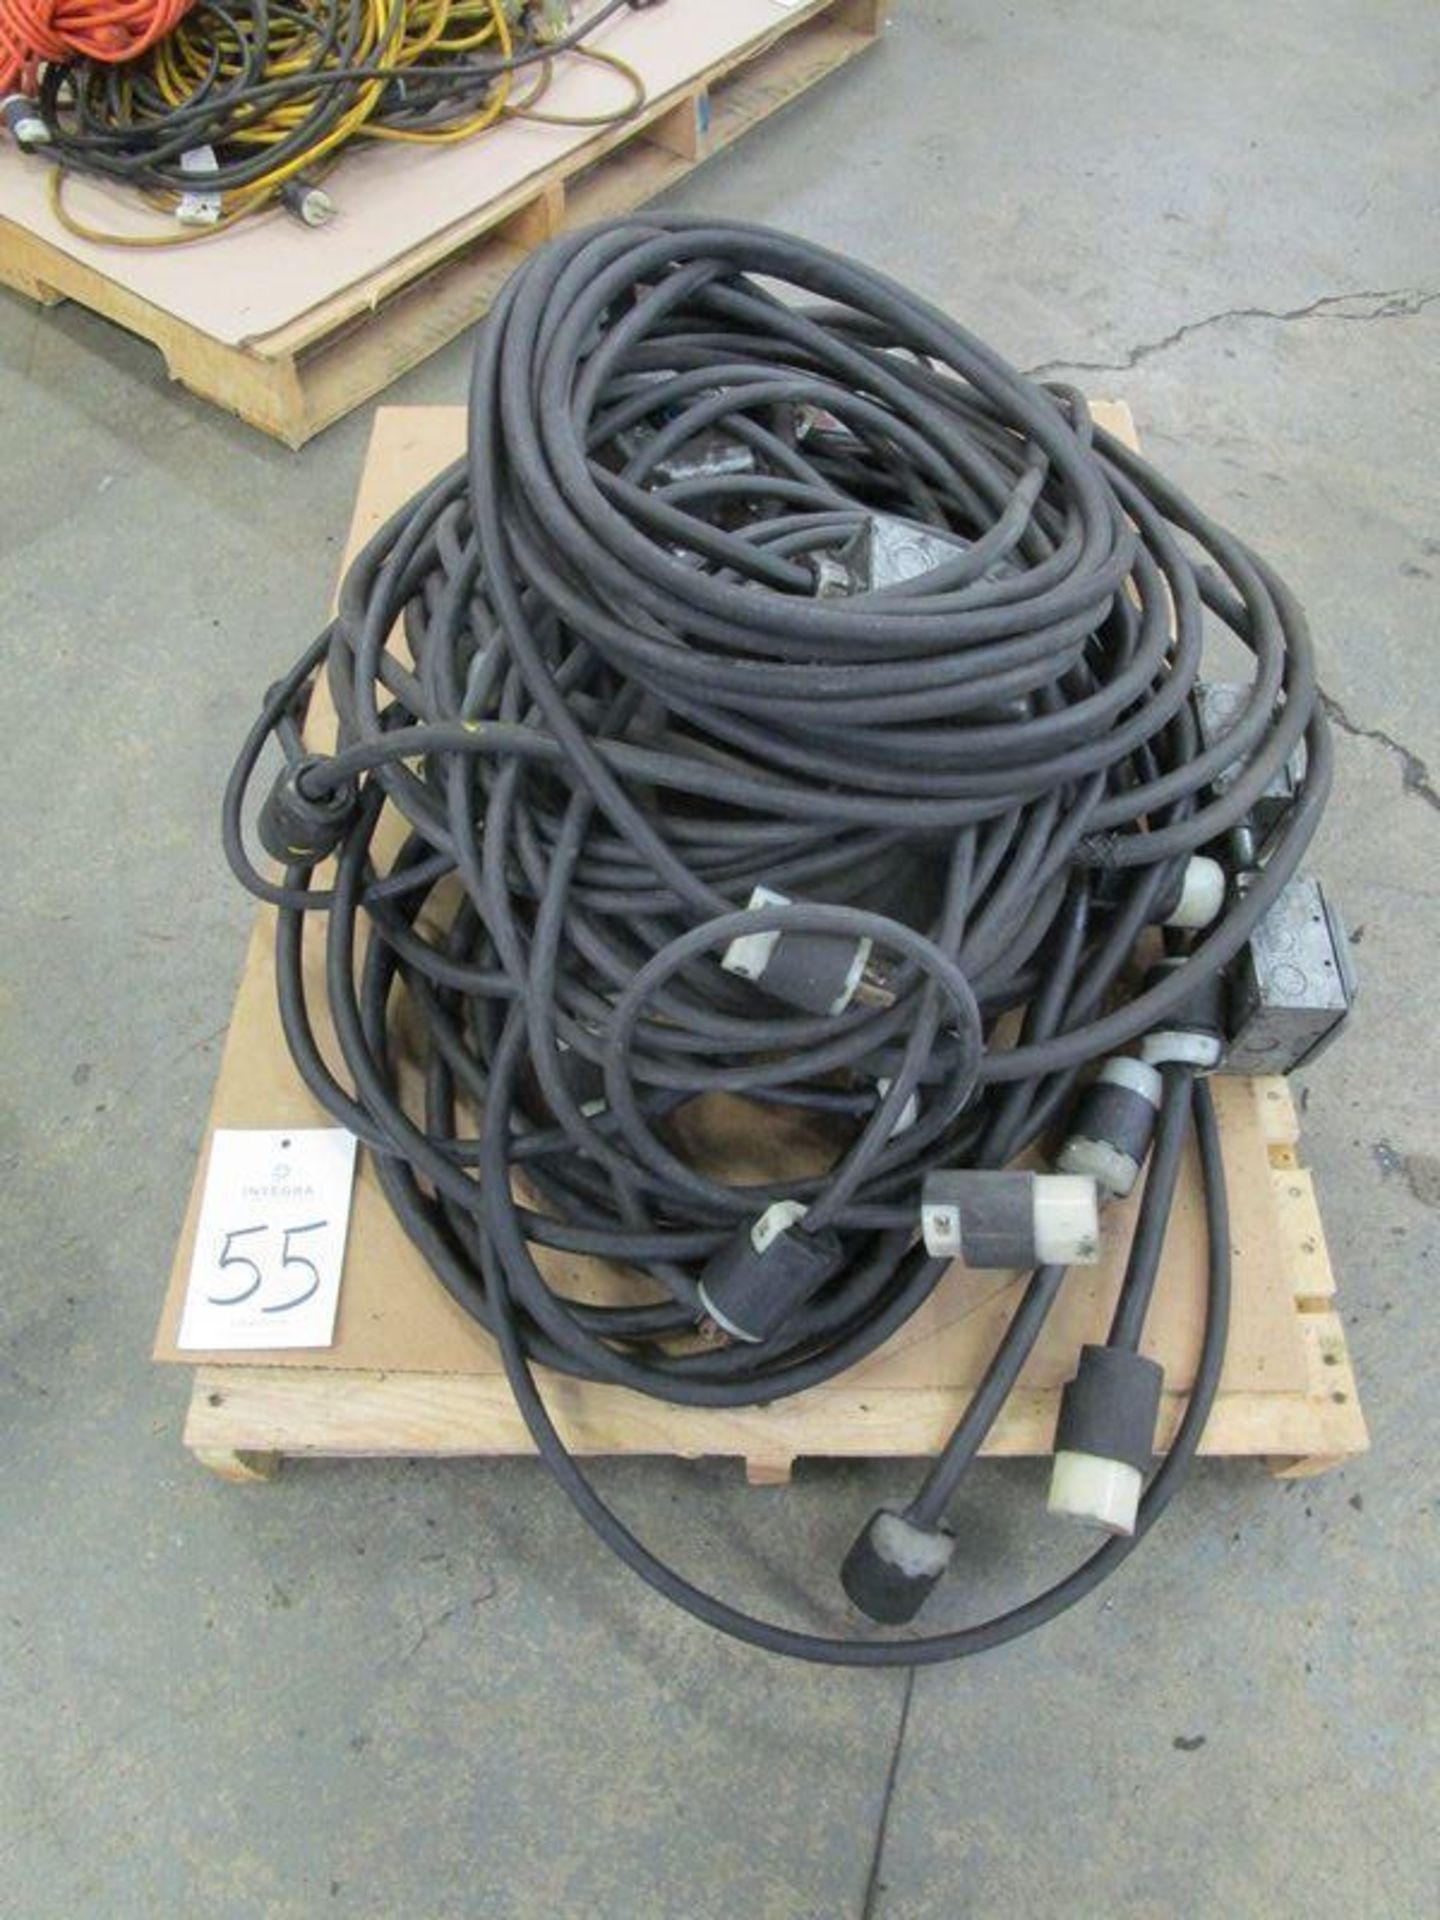 480-Volt Extension Cords